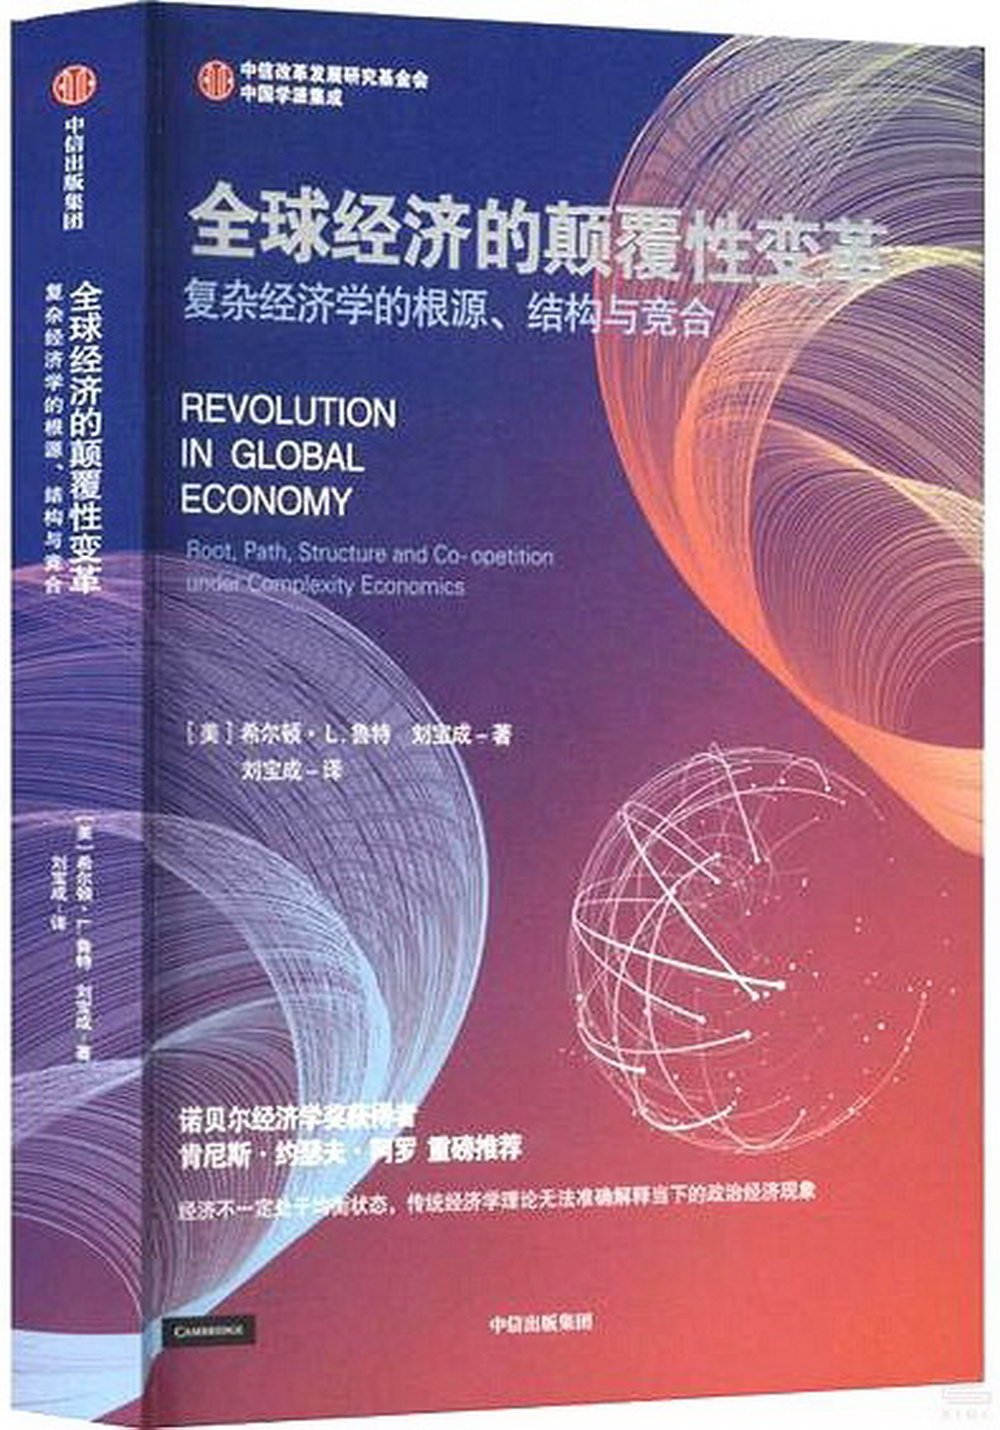 全球經濟的顛覆性變革：複雜經濟學的根源、結構與競合